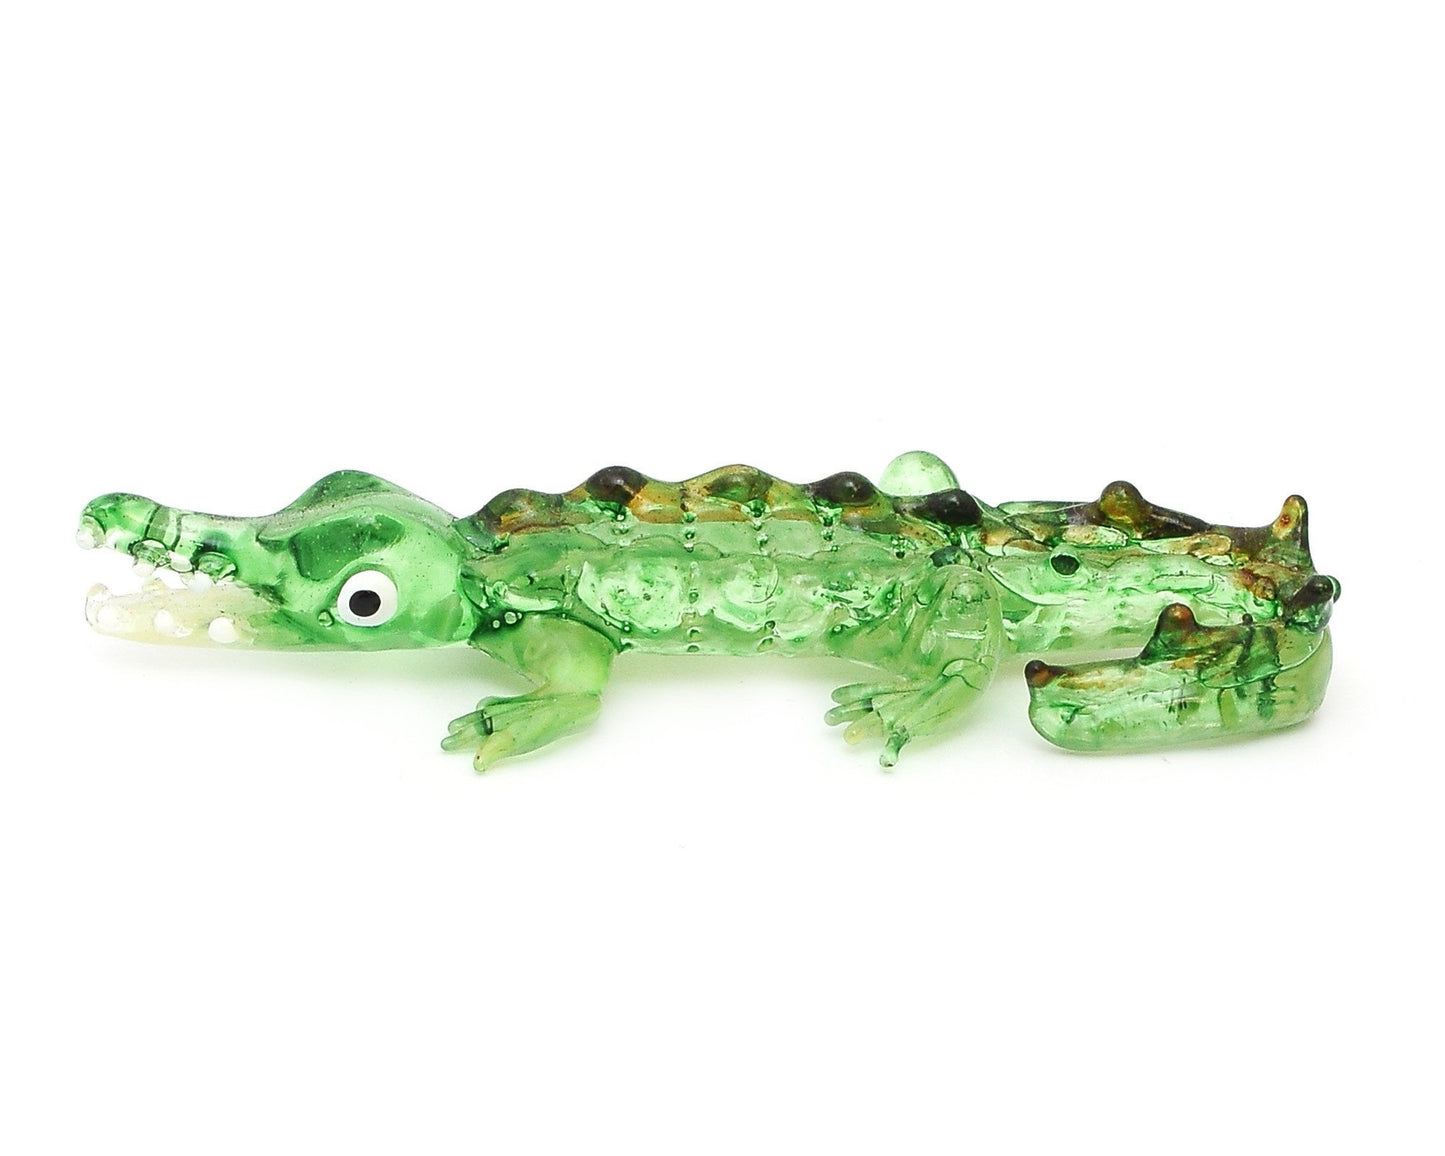 Vietguild's  Crocodile Handmade Vietnamese Glass Figurine Statue